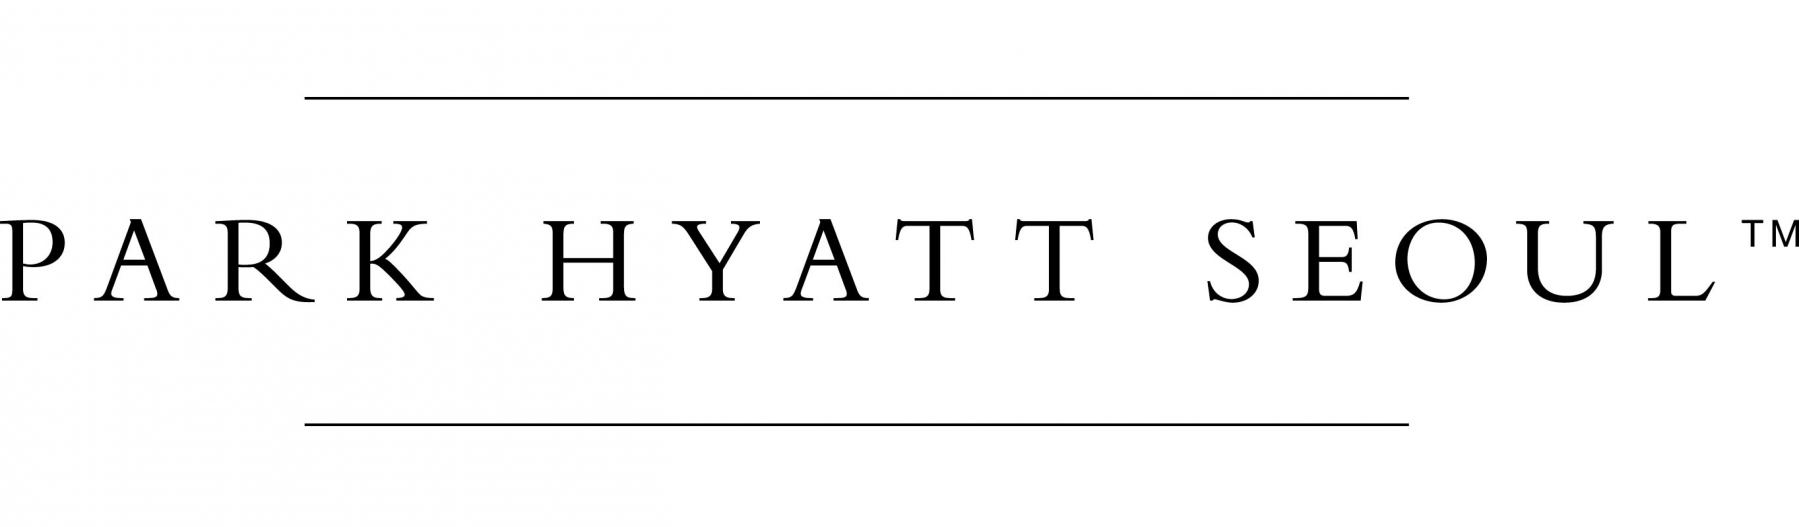 Park Hyatt Seoul Hotel Logo